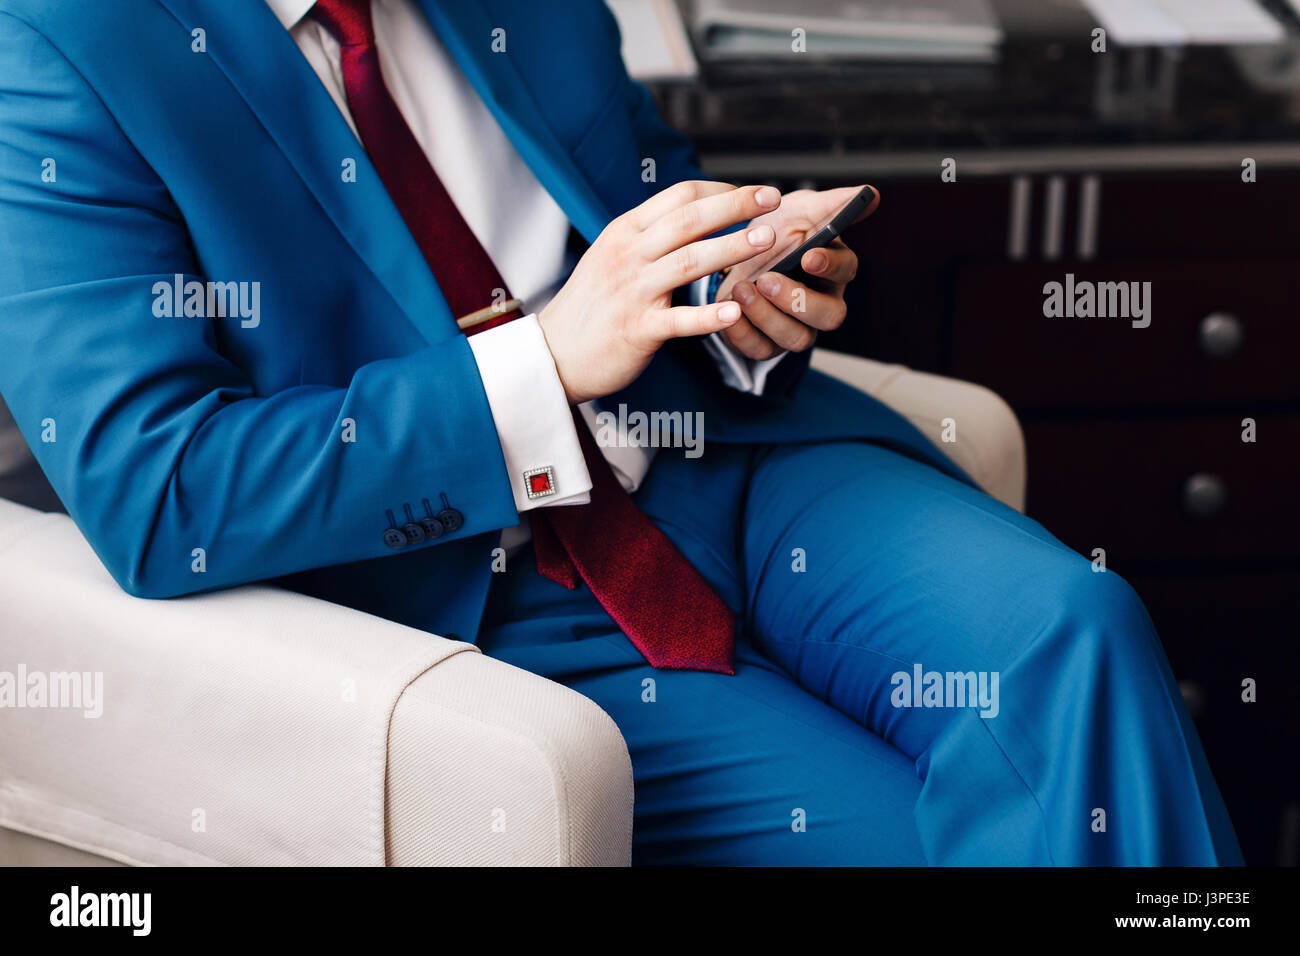 Geschäftsmann halten Sie eine Telefon in der hand beim Sitzen auf einem Sofa in einem blauen Anzug. auf Hand teure mechanische Uhr mit Lederarmband. Hemd mit Manschettenknöpfen Stockfoto